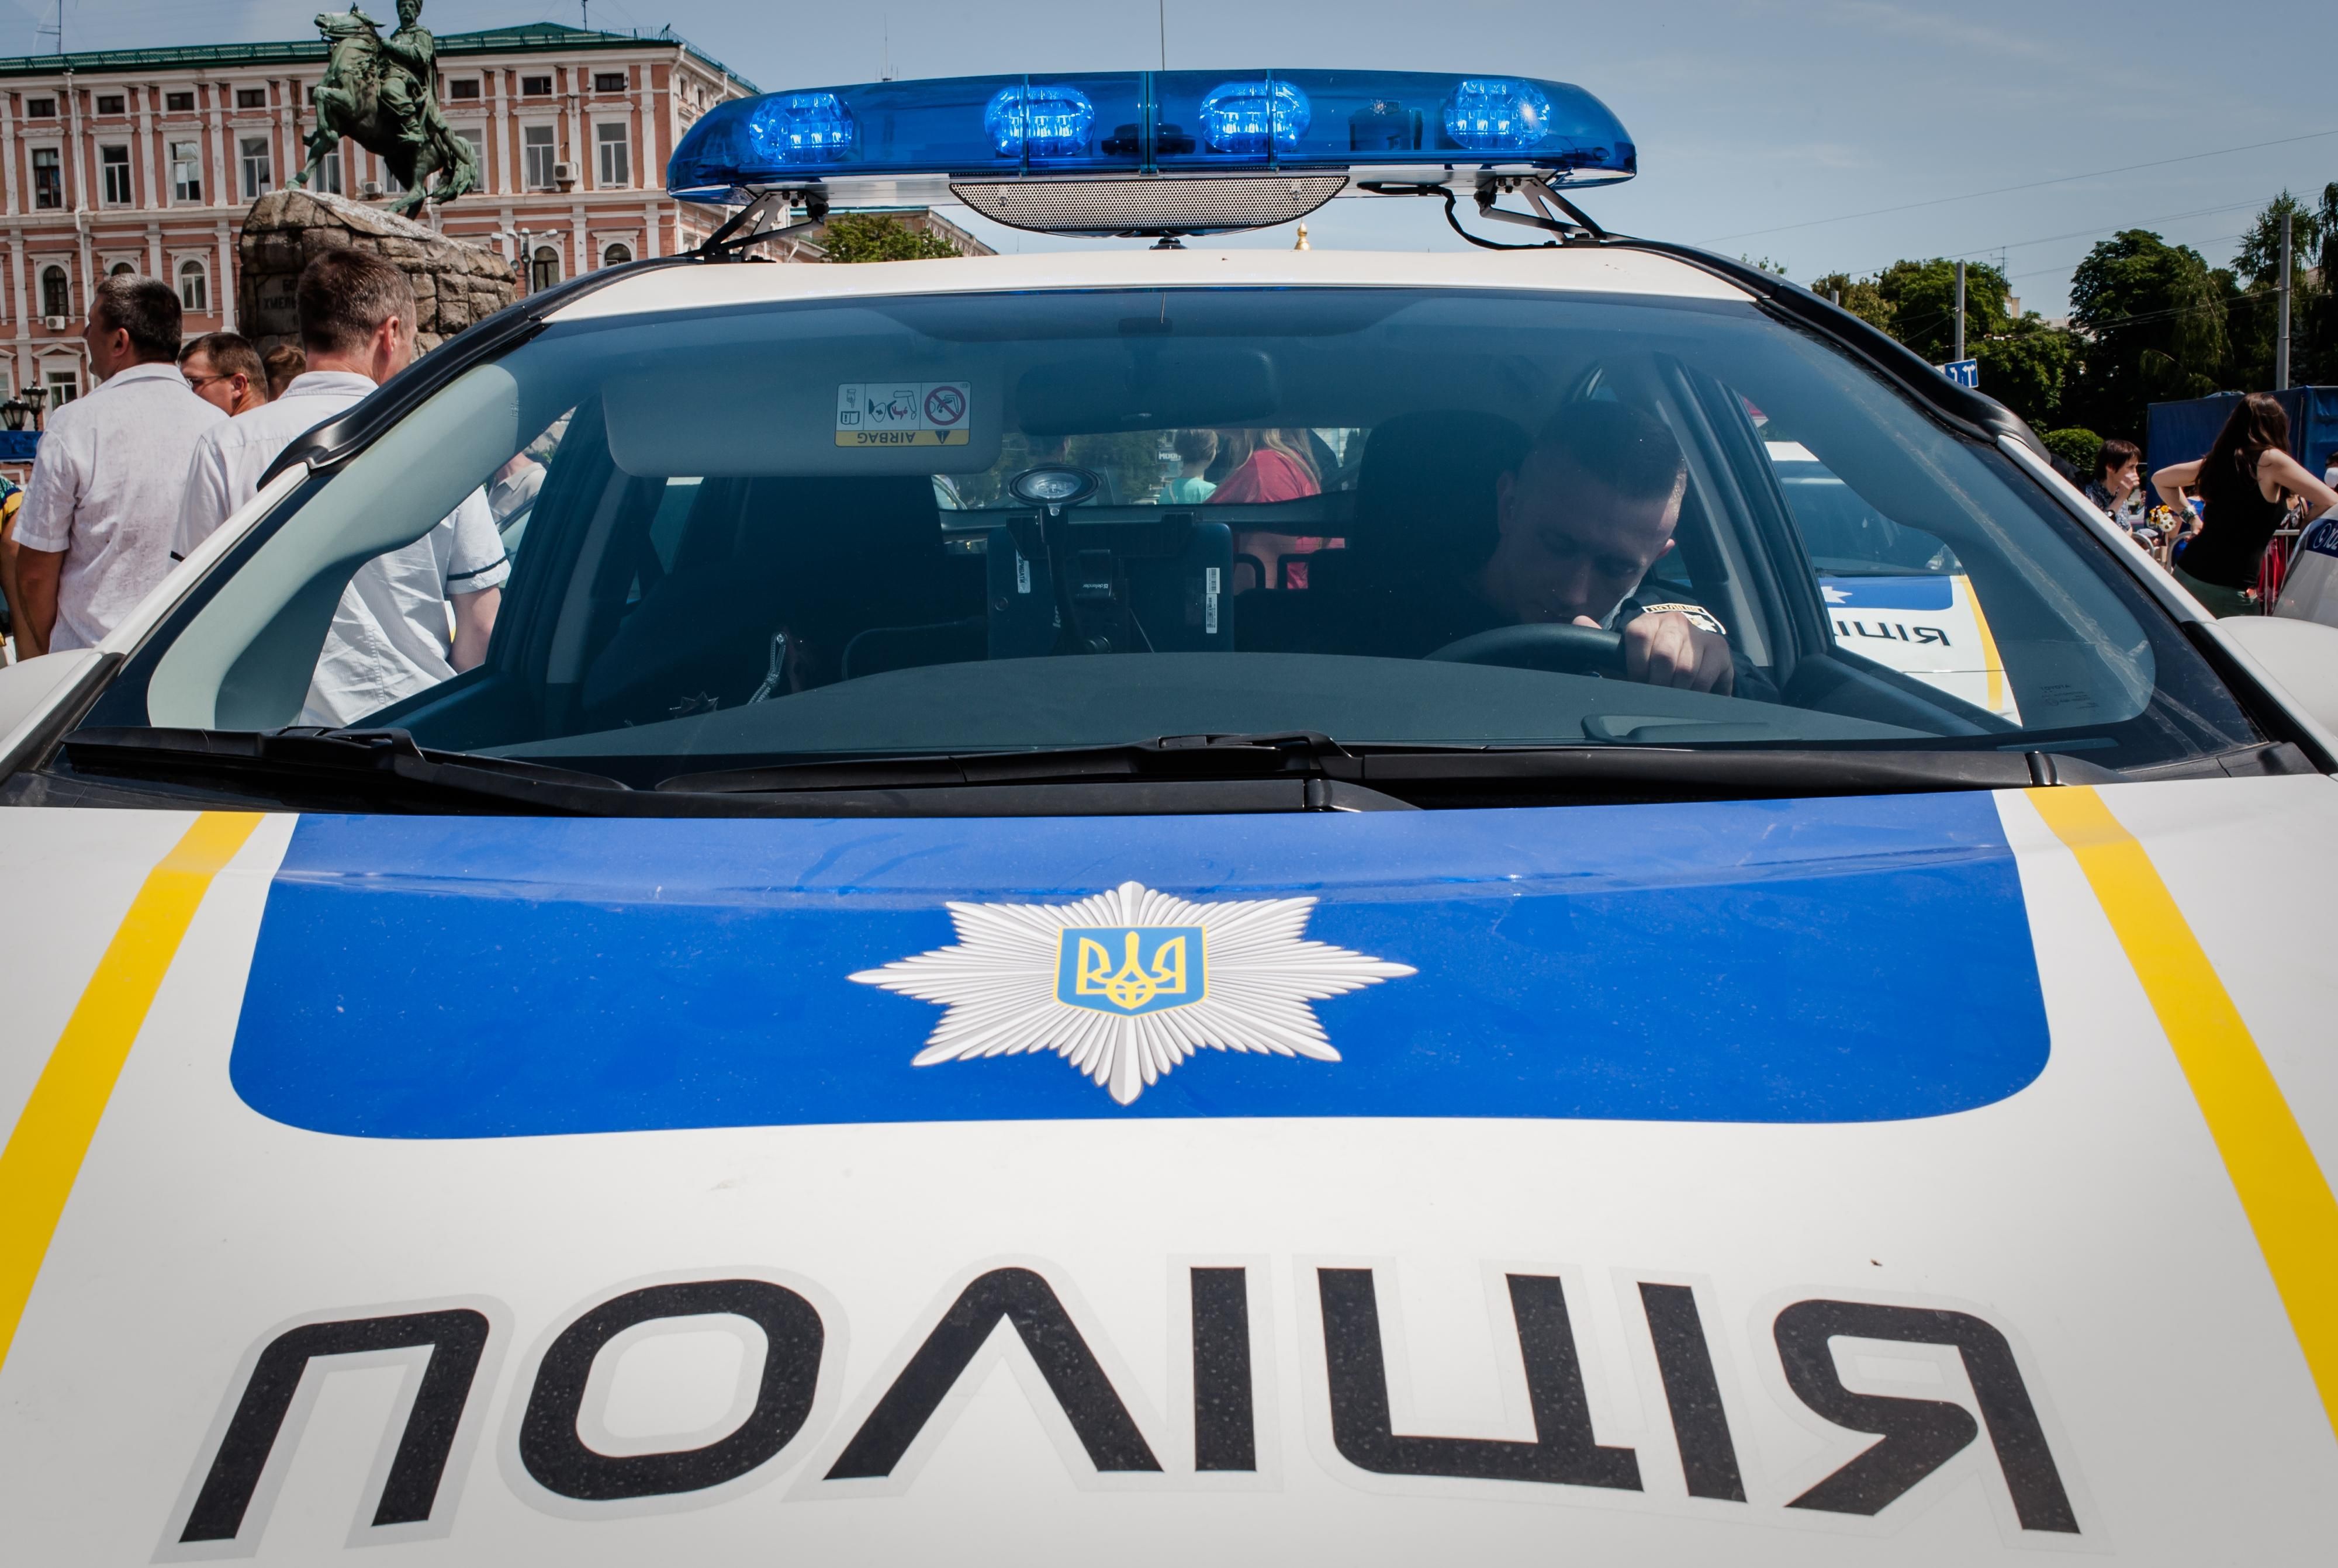 Бойовик у Києві. Таксиста побили і викрали, копи влаштували погоню